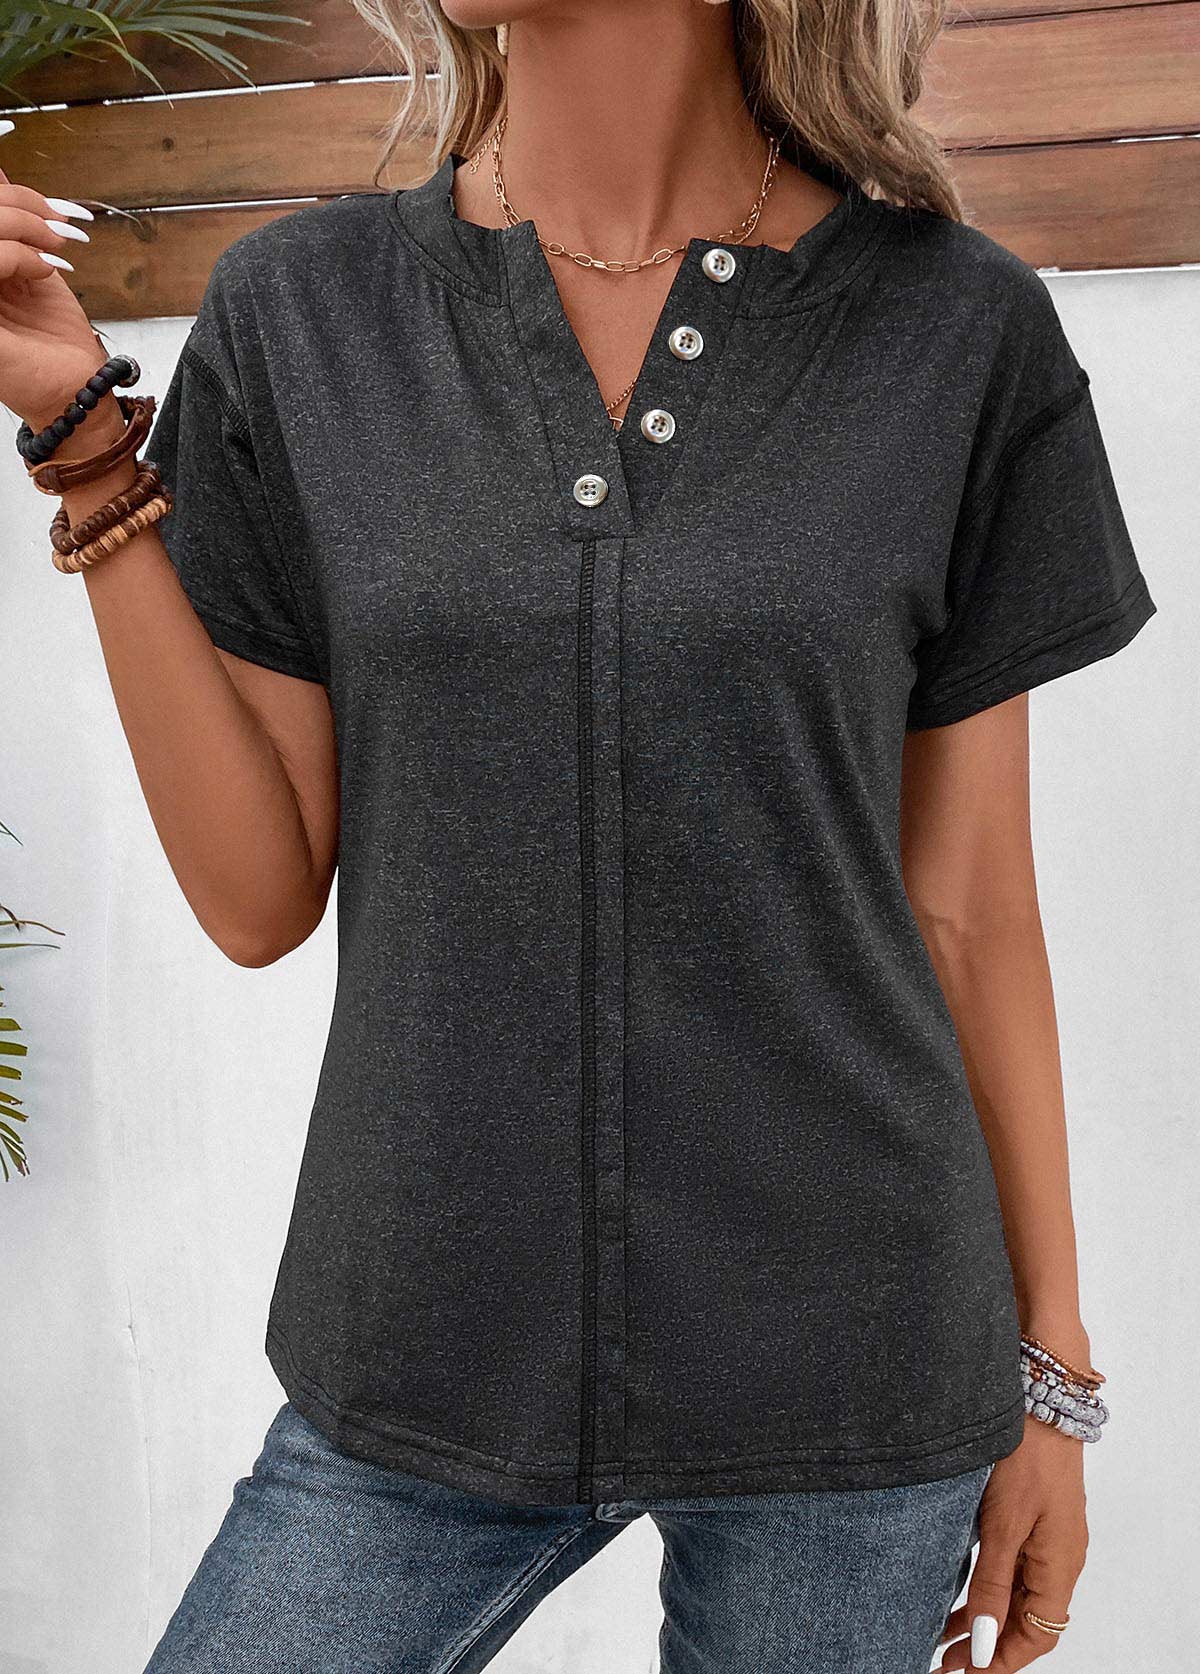 Schwarzes kurzärmliges T-Shirt mit Knopfleiste und geteiltem Ausschnitt